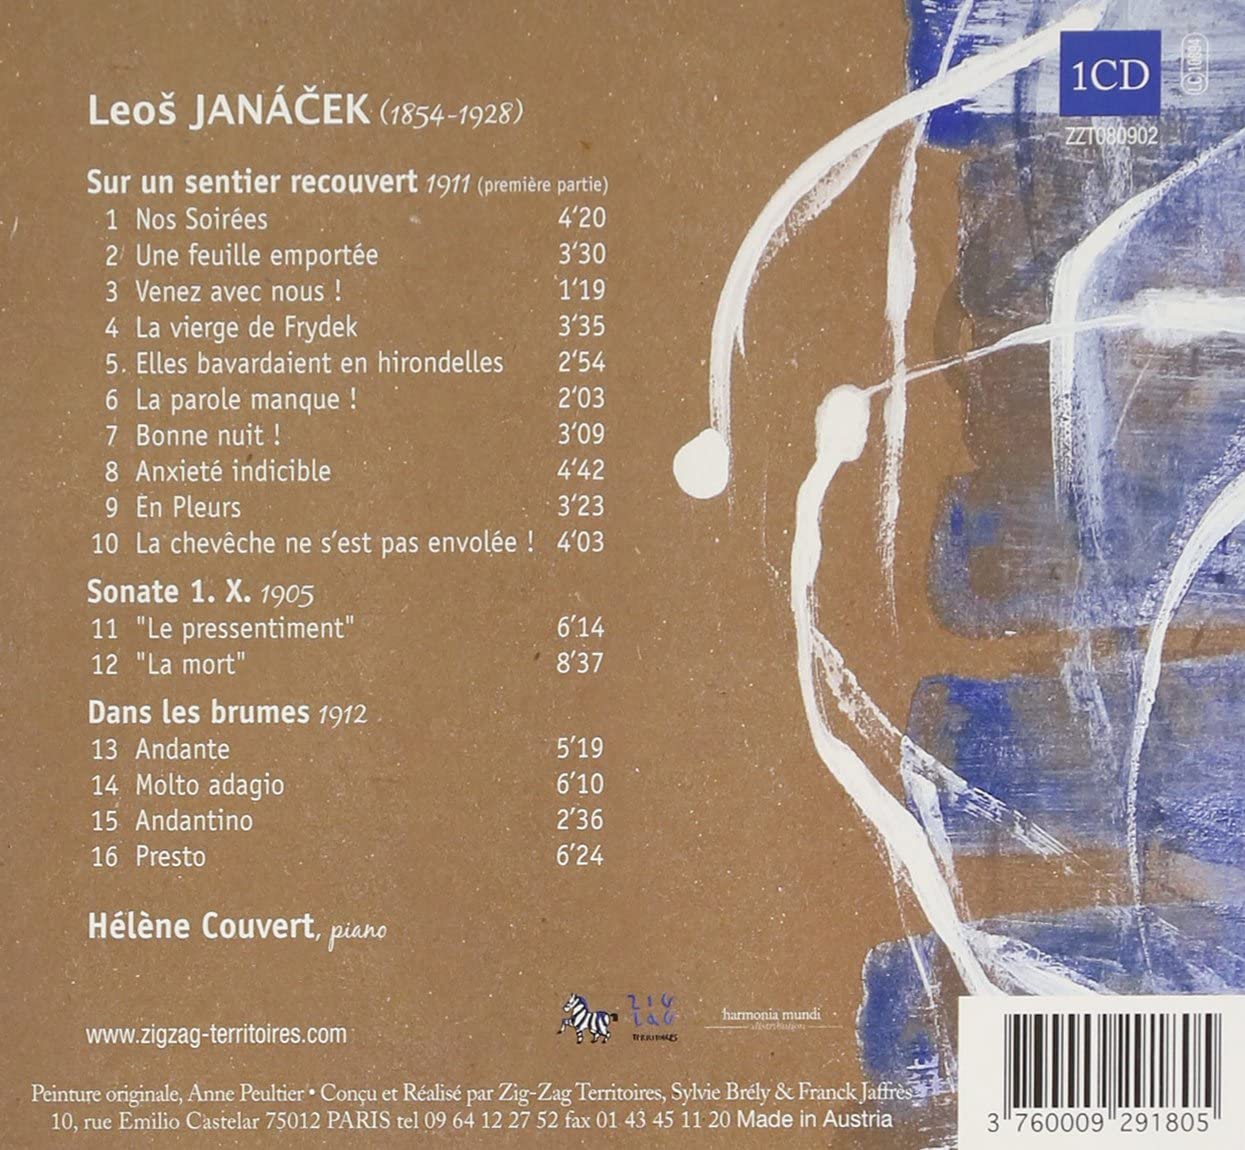 Janacek: Pieces pour piano - slide-1